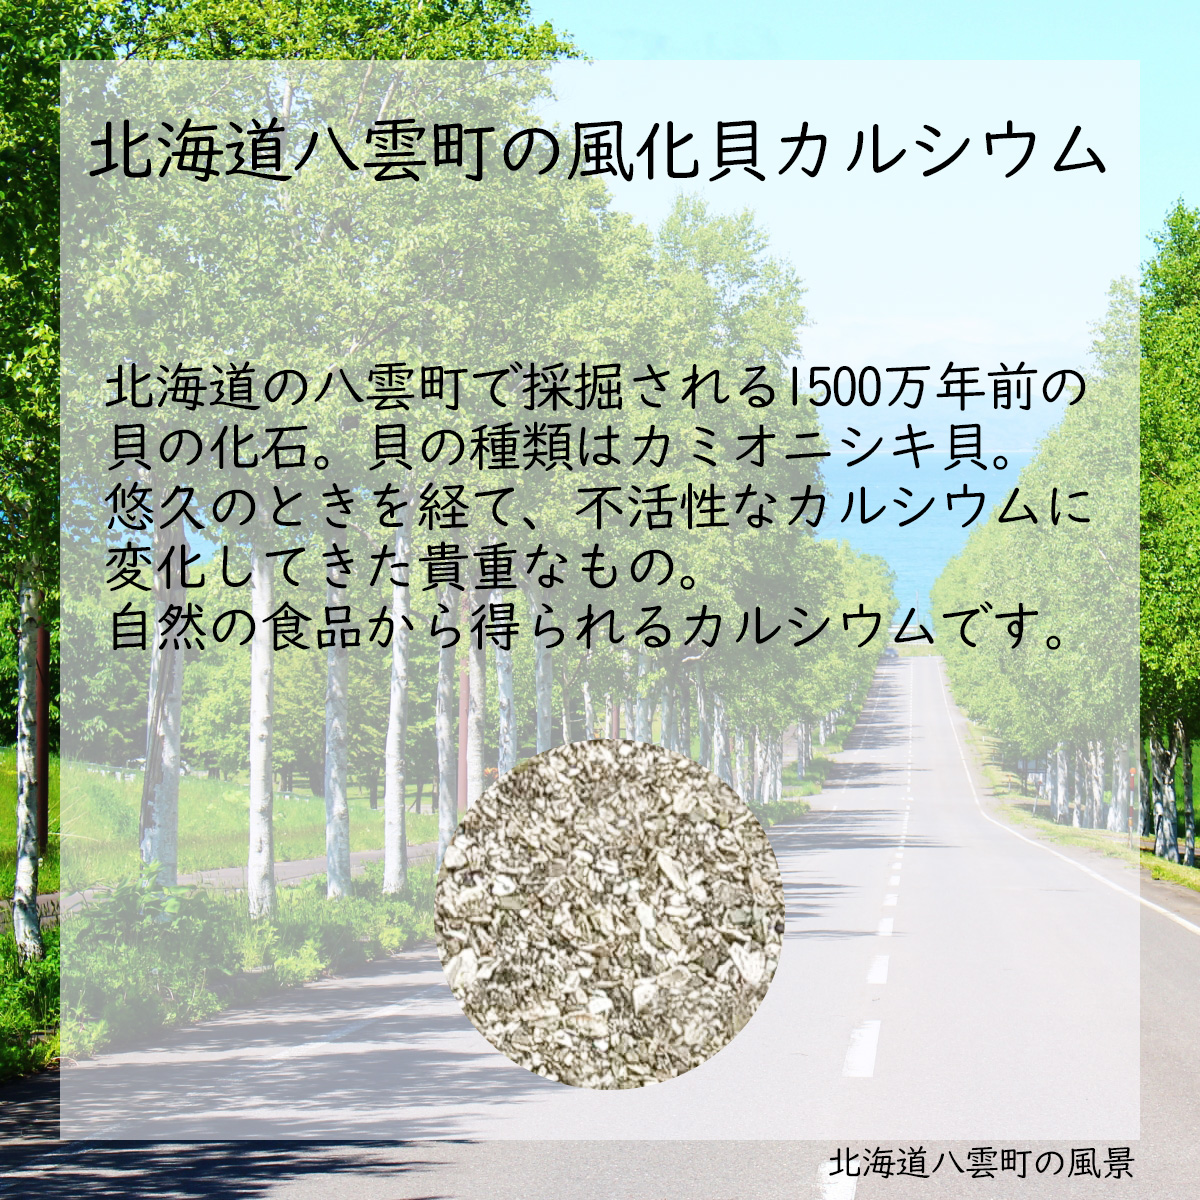 北海道八雲町の風化貝カルシウム北海道の八雲町で採掘される1500万年前の貝の化石。貝の種類はカミオニシキ貝。悠久のときを経て、不活性なカルシウムに変化してきた貴重なもの。自然の食品から得られるカルシウムです。